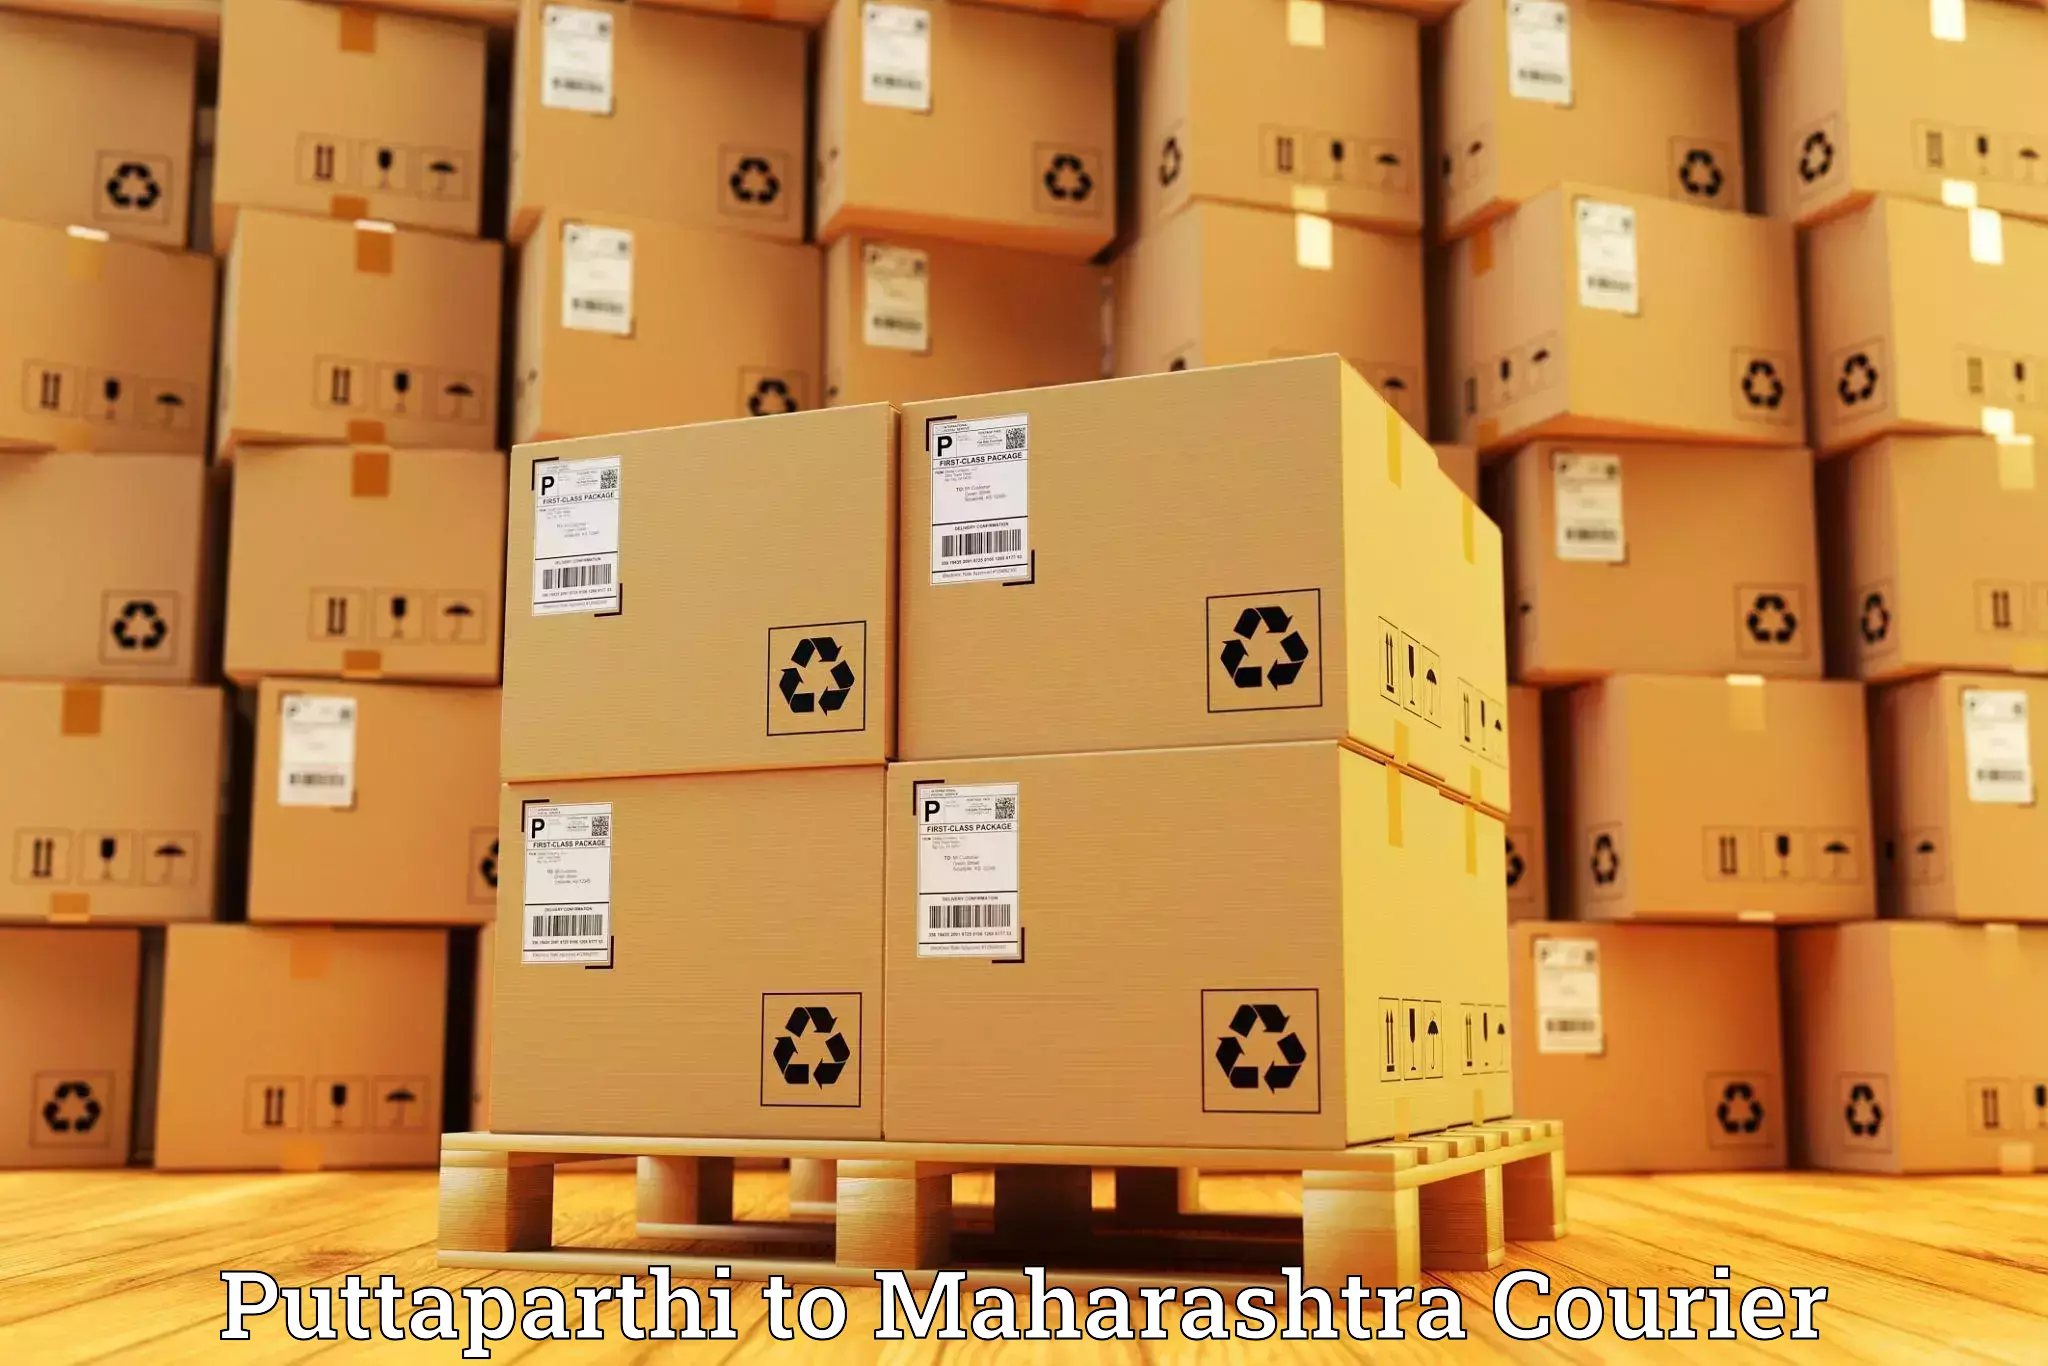 Baggage transport network Puttaparthi to Maharashtra